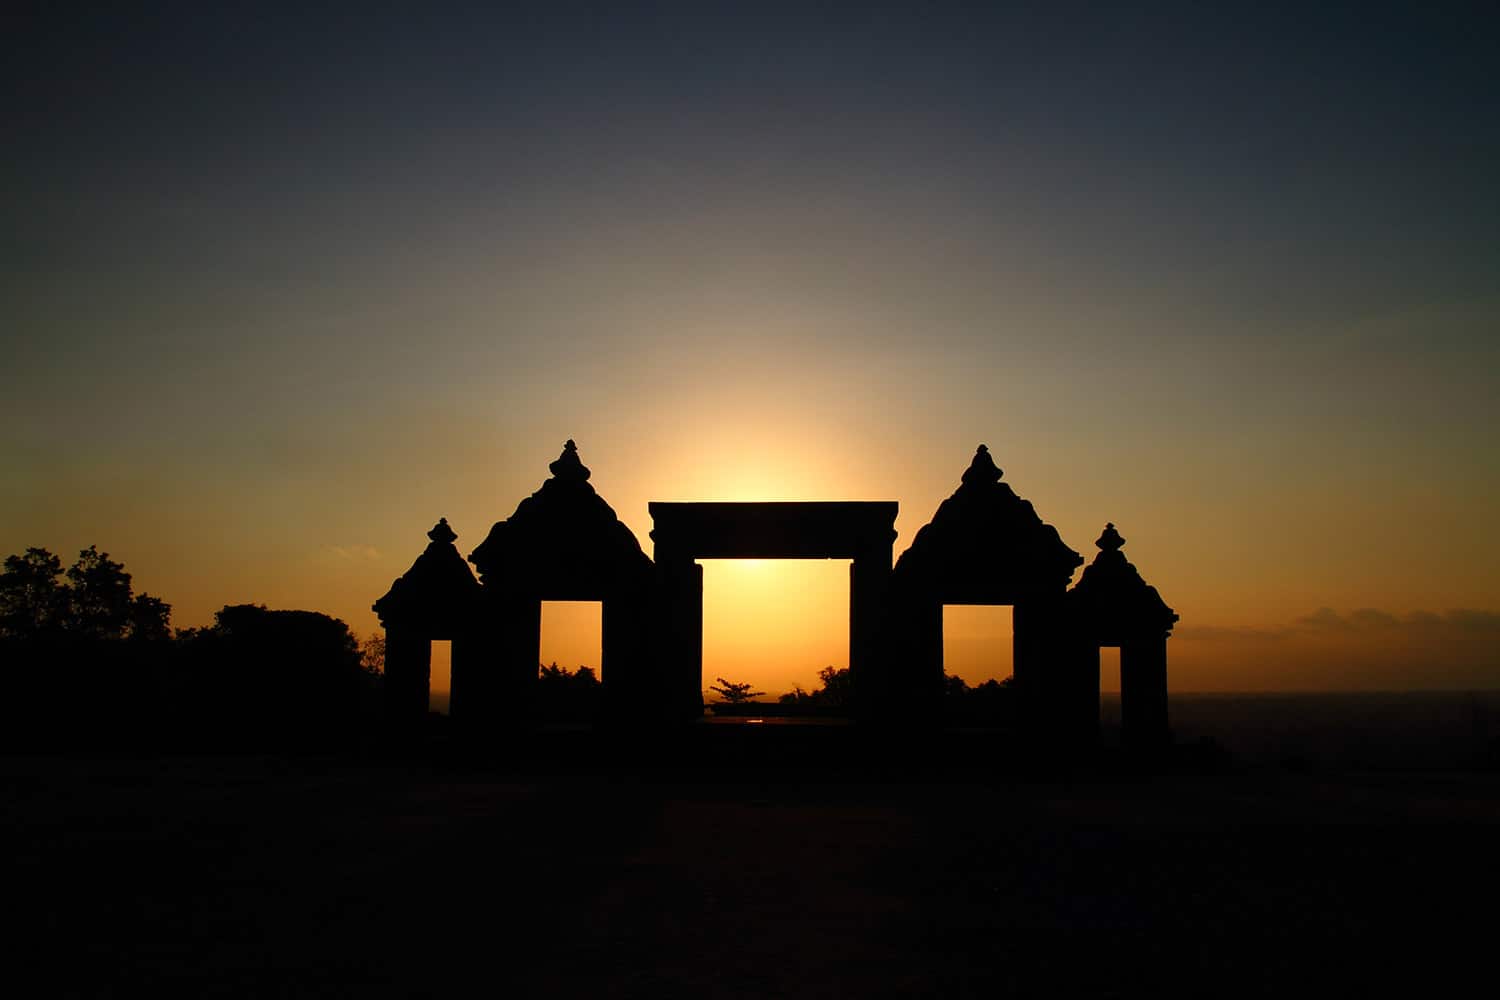 Sunset at Ratu Boko Temple